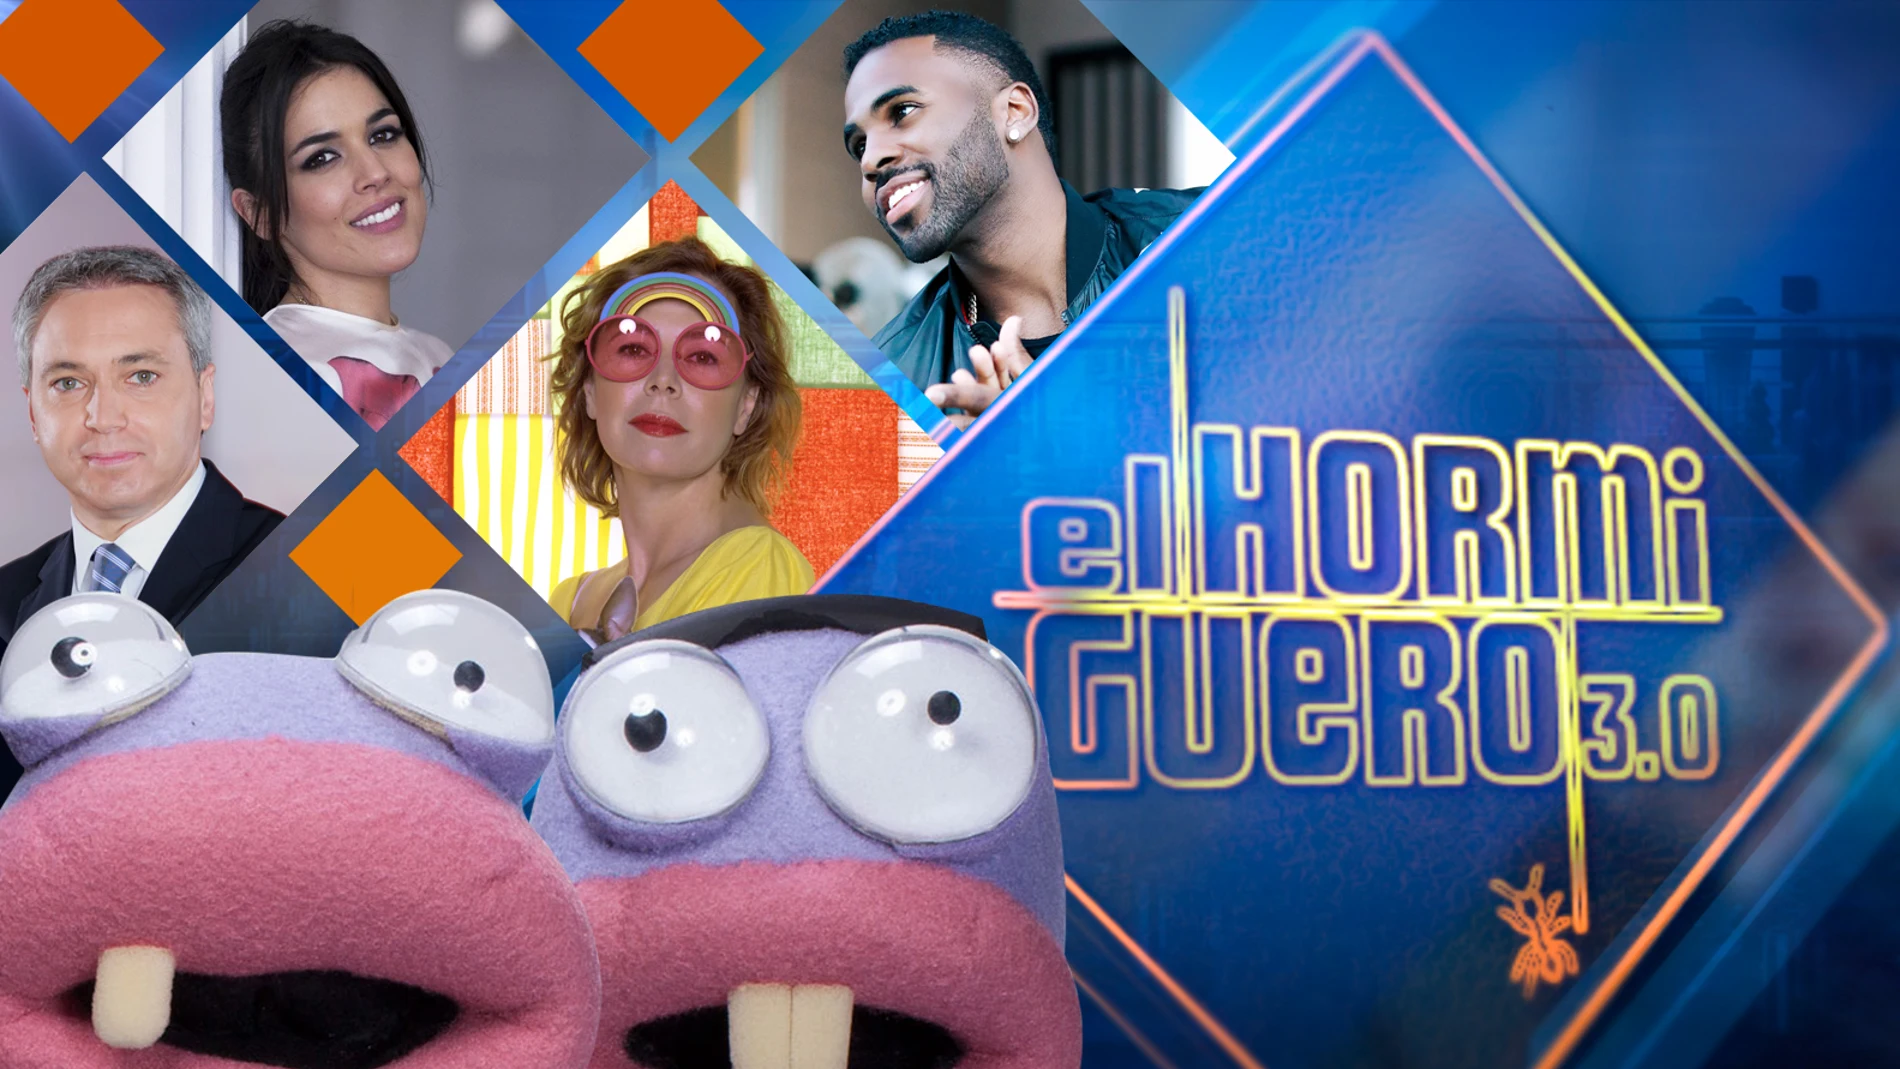 Vicente Vallés, Adriana Ugarte, Ágatha Ruiz de la Prada y Jason Derulo, se divertirán la próxima semana en 'El Hormiguero 3.0'